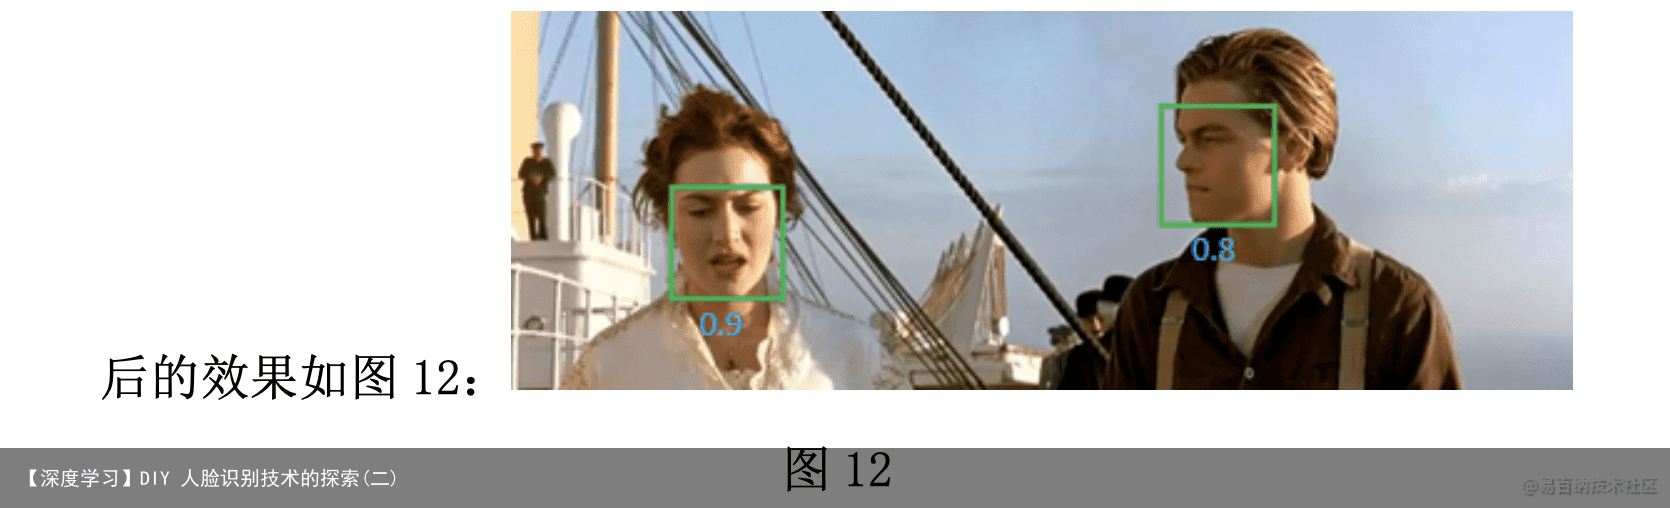 【深度学习】DIY 人脸识别技术的探索(二)4